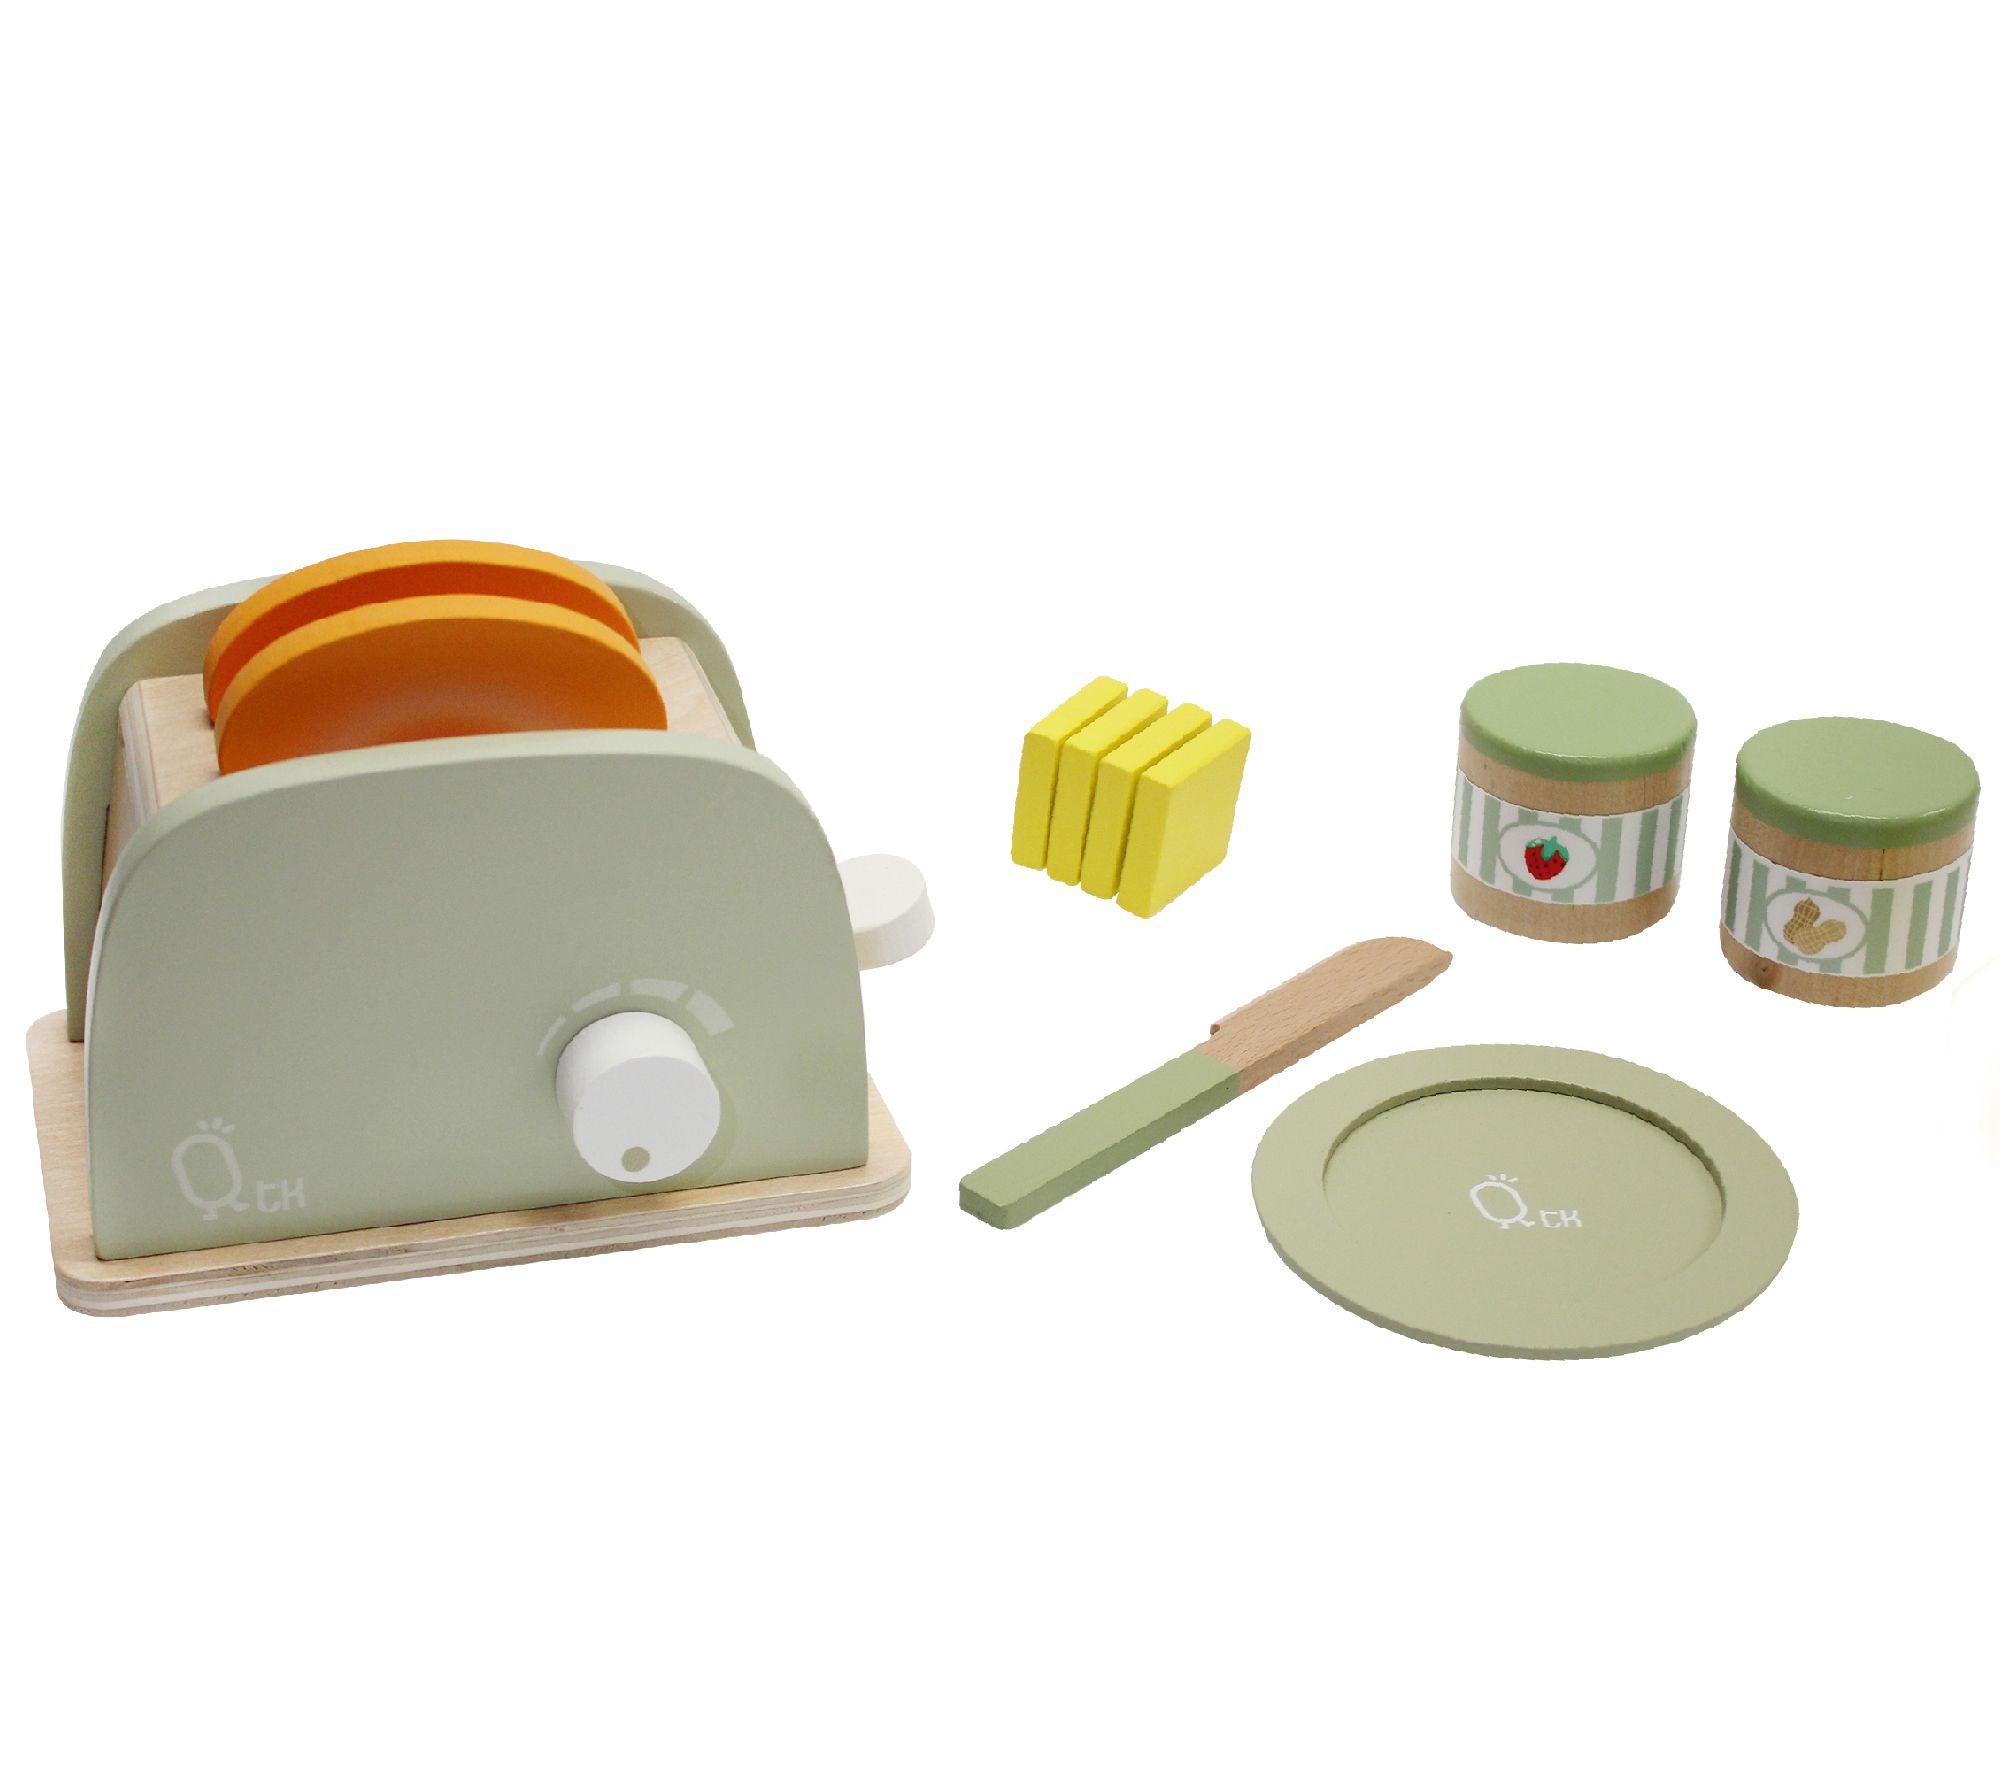 Teamson Kids - Little Chef Frankfurt Wooden Coffee machine play kitchen  accessories - Green- 8 pcs